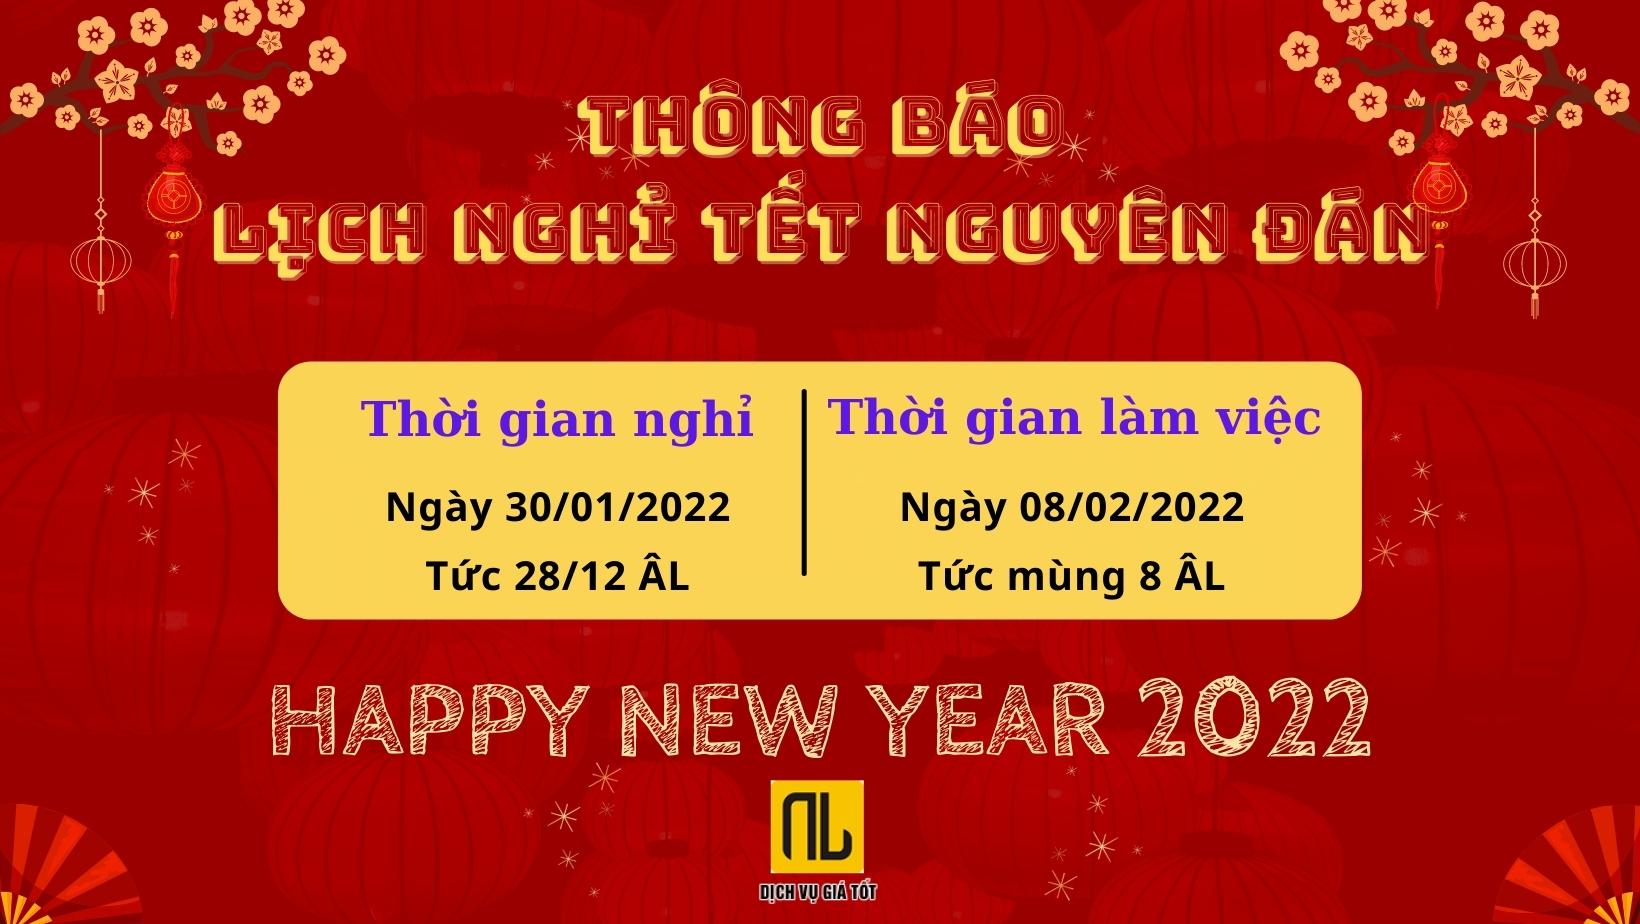 Vận tải Nam Lộc thông báo lịch nghỉ Tết Nguyên Đán 2022